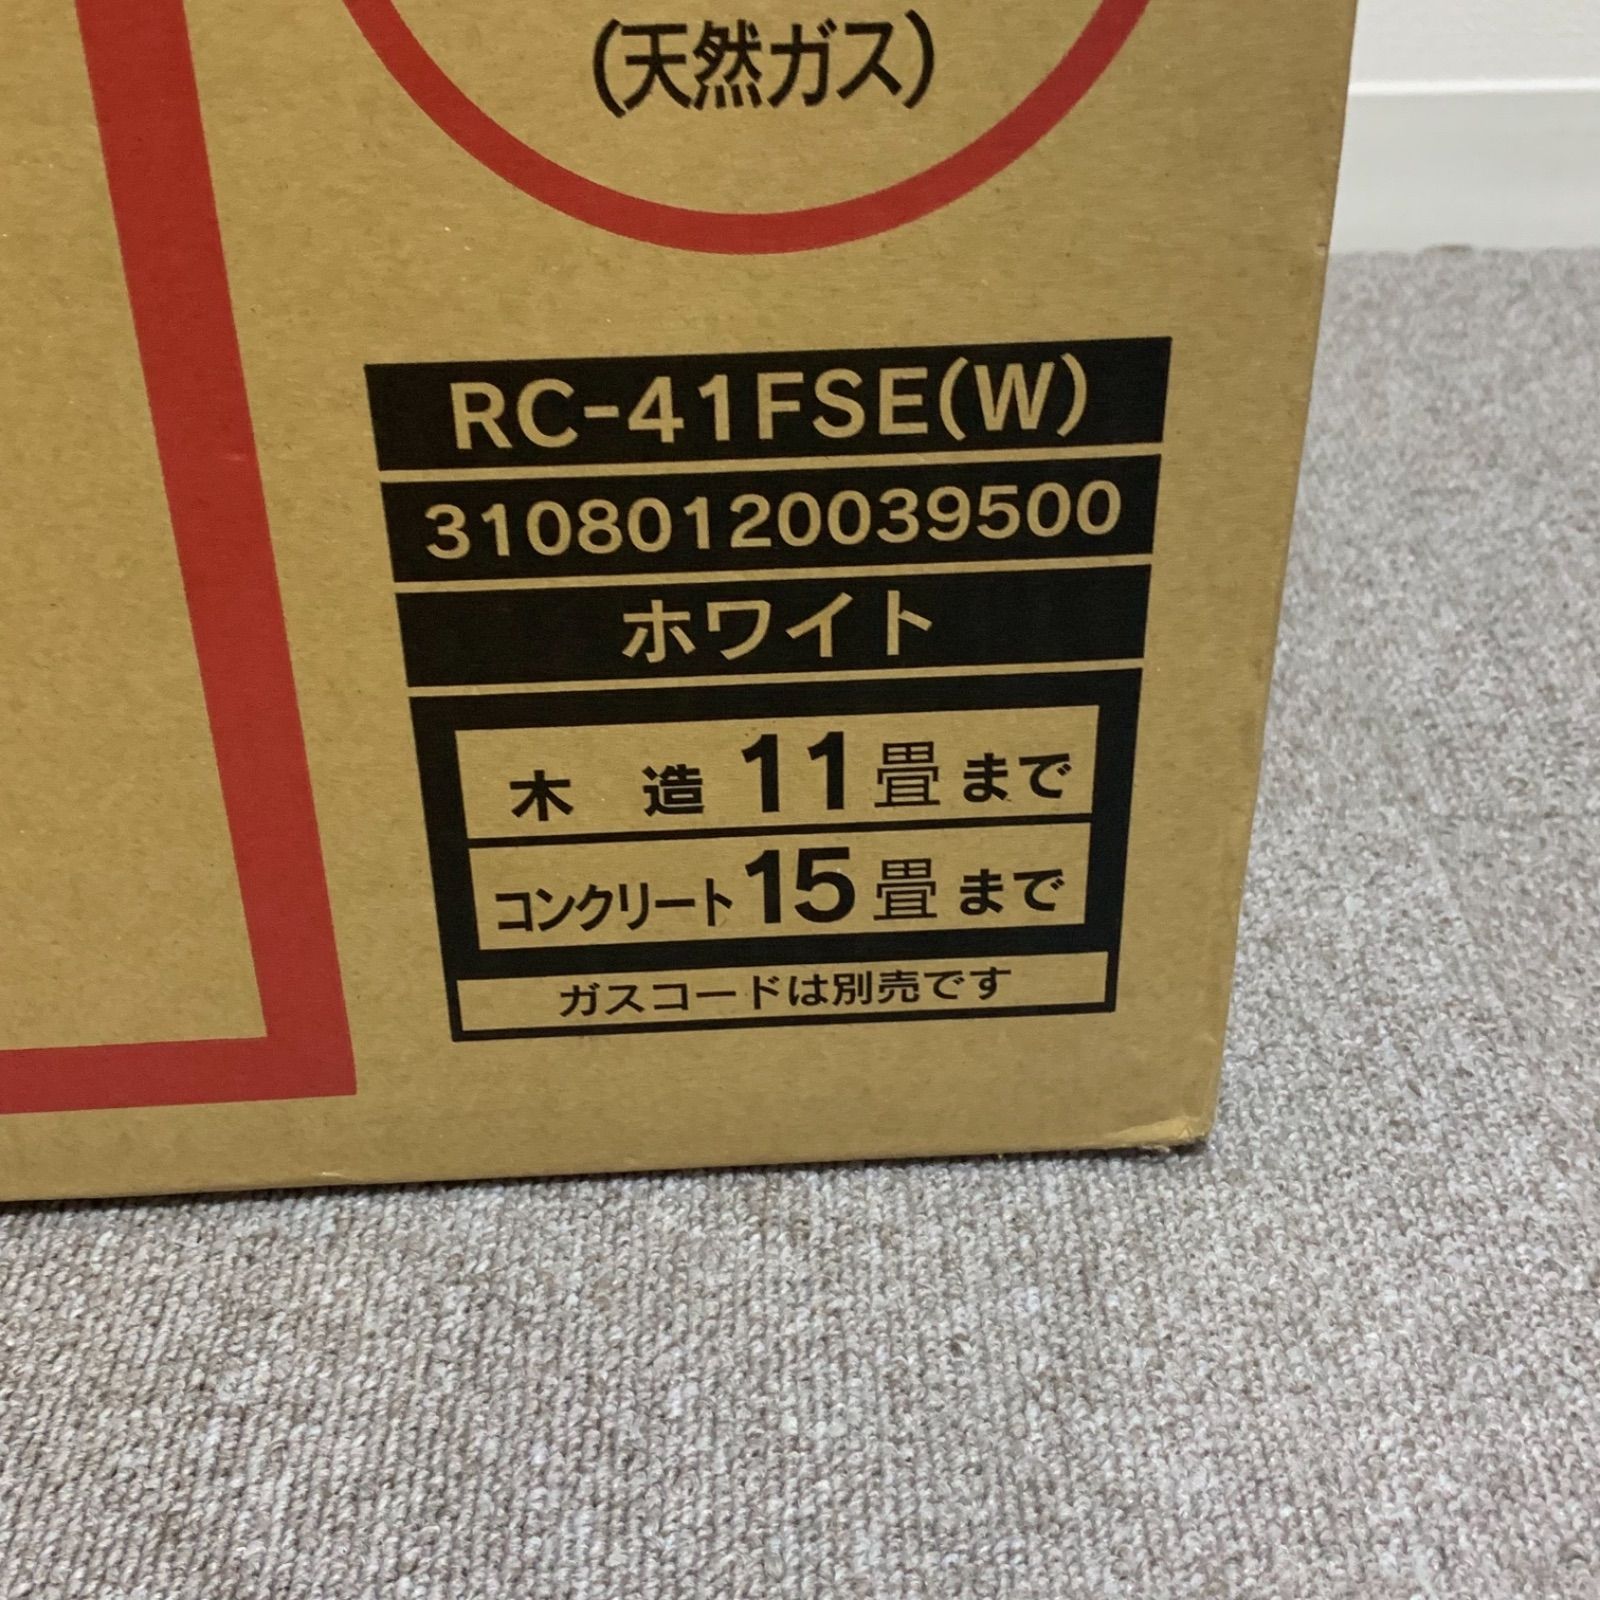 東邦ガス RC-41FSE(W) WHITE-